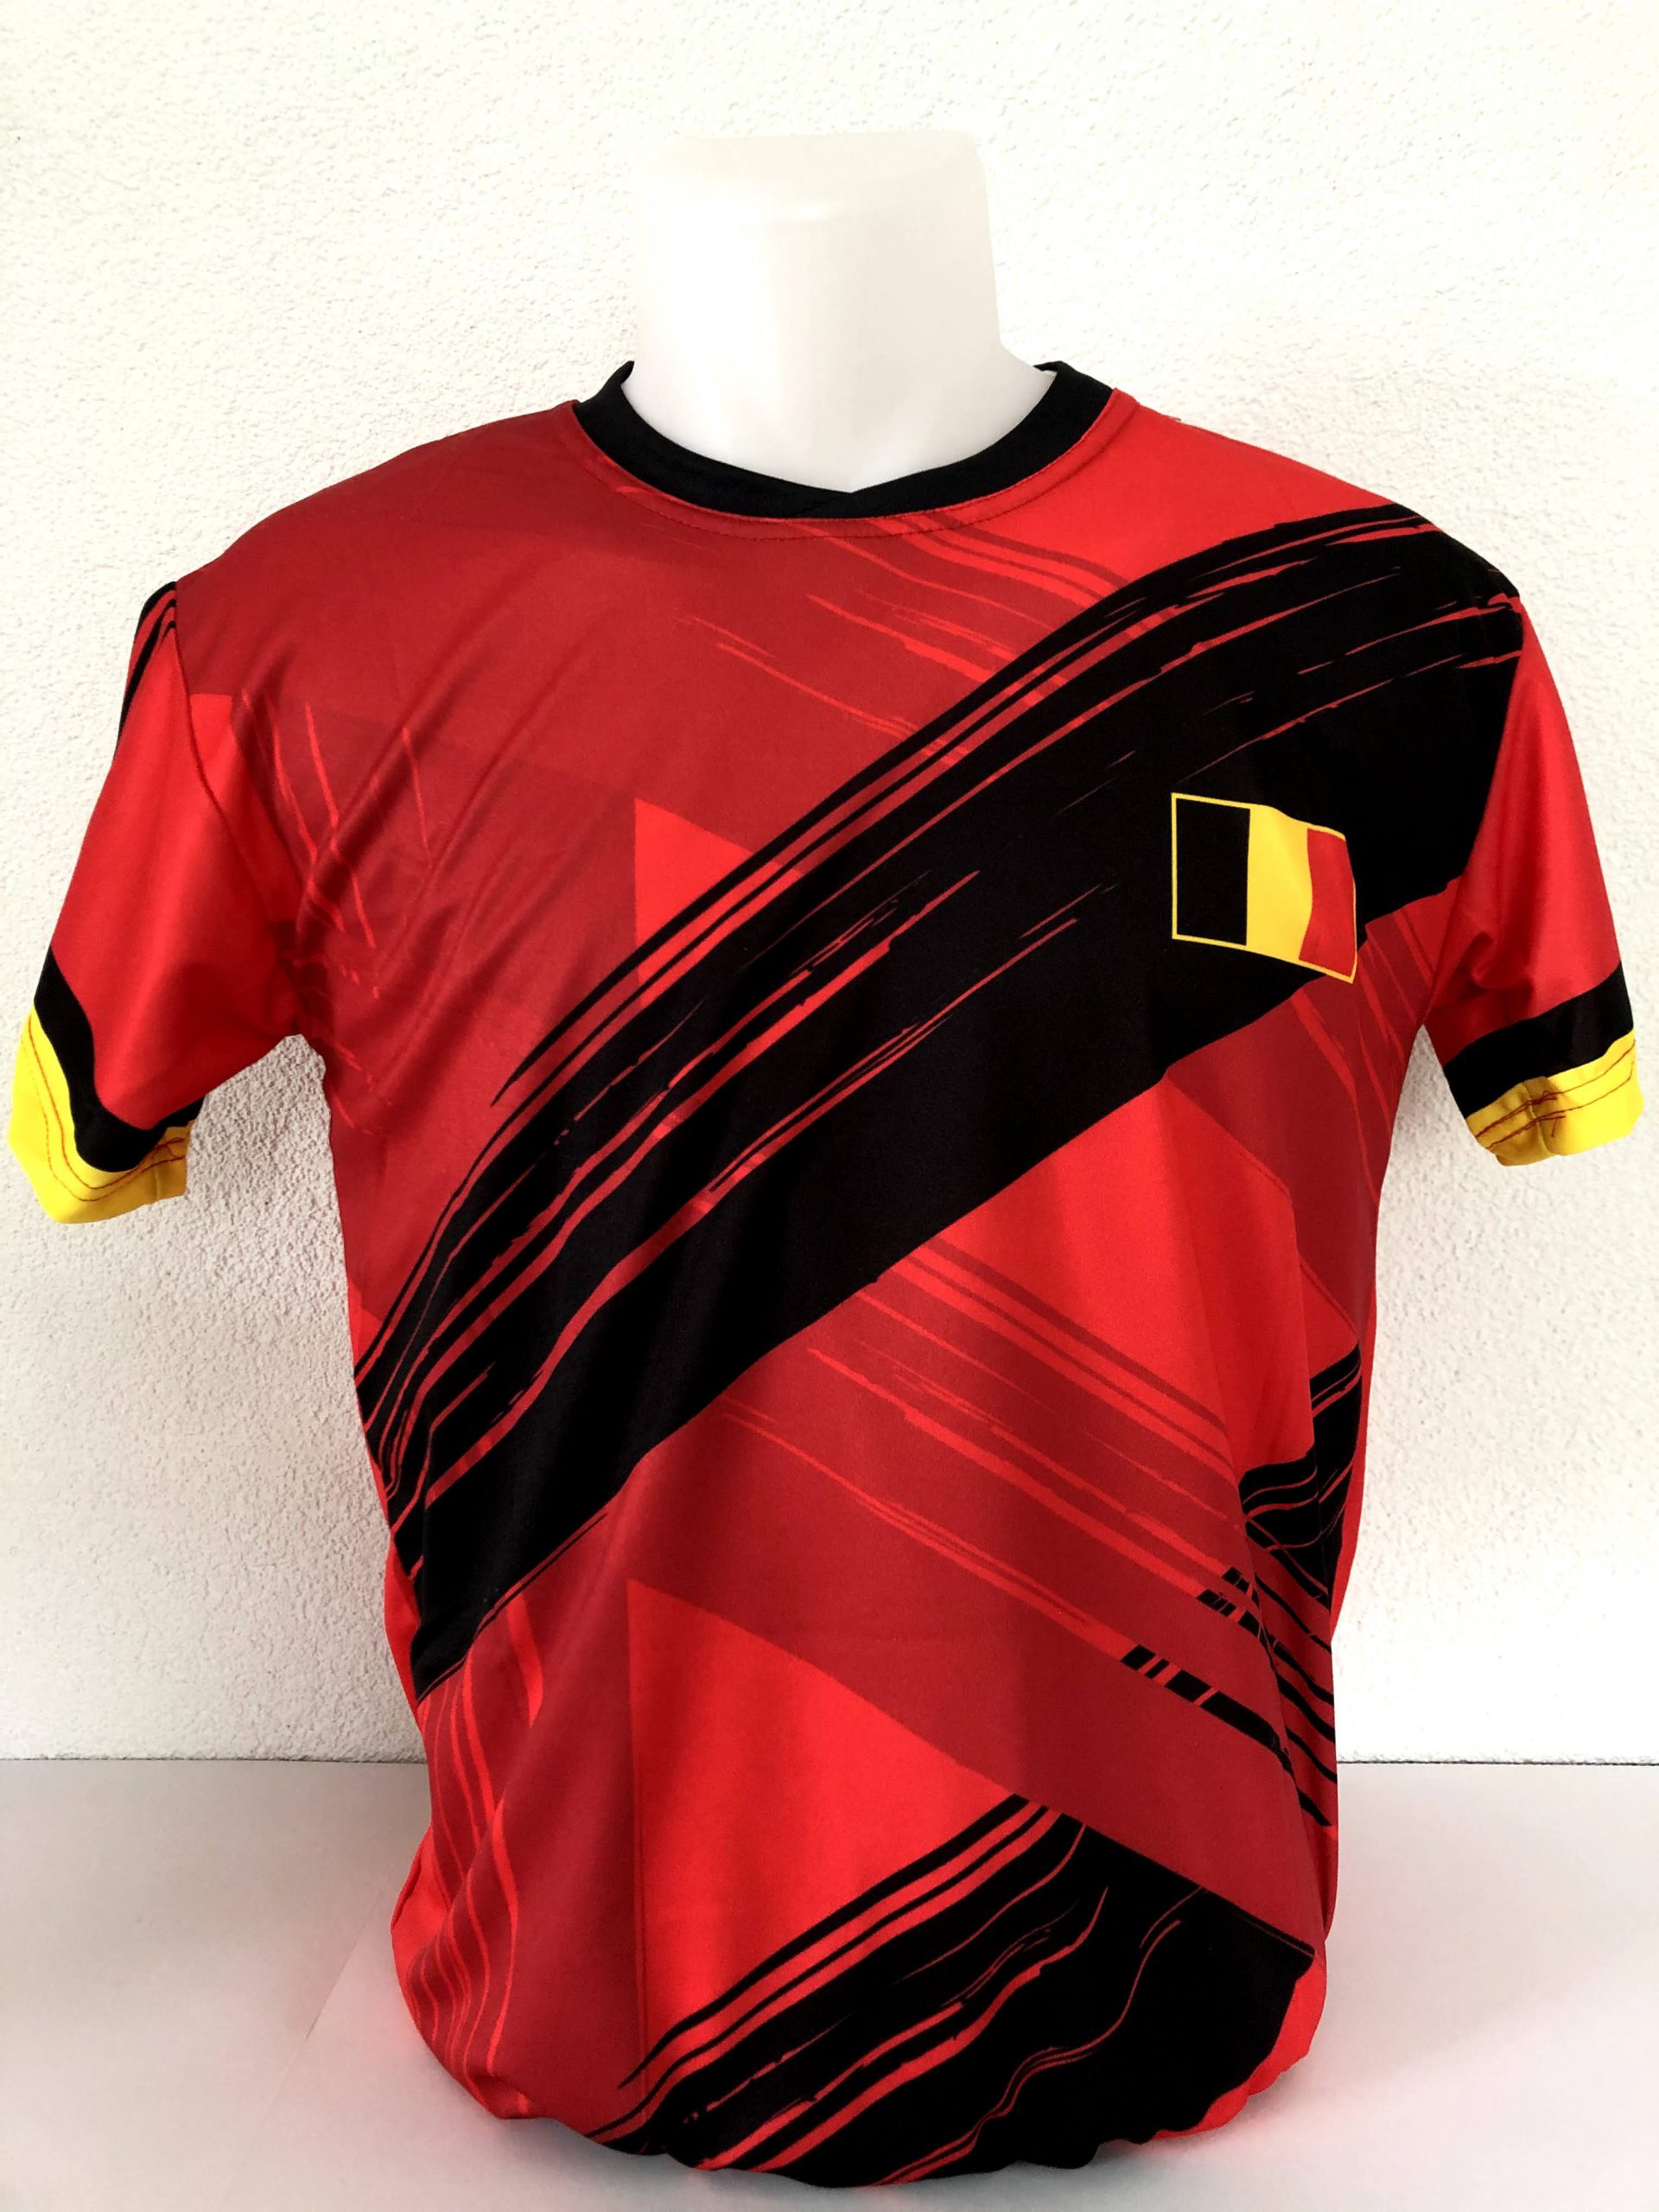 rijstwijn moeilijk statisch Belgisch Elftal De Bruyne Voetbalshirt Thuis - Voetbalshirt-tenue